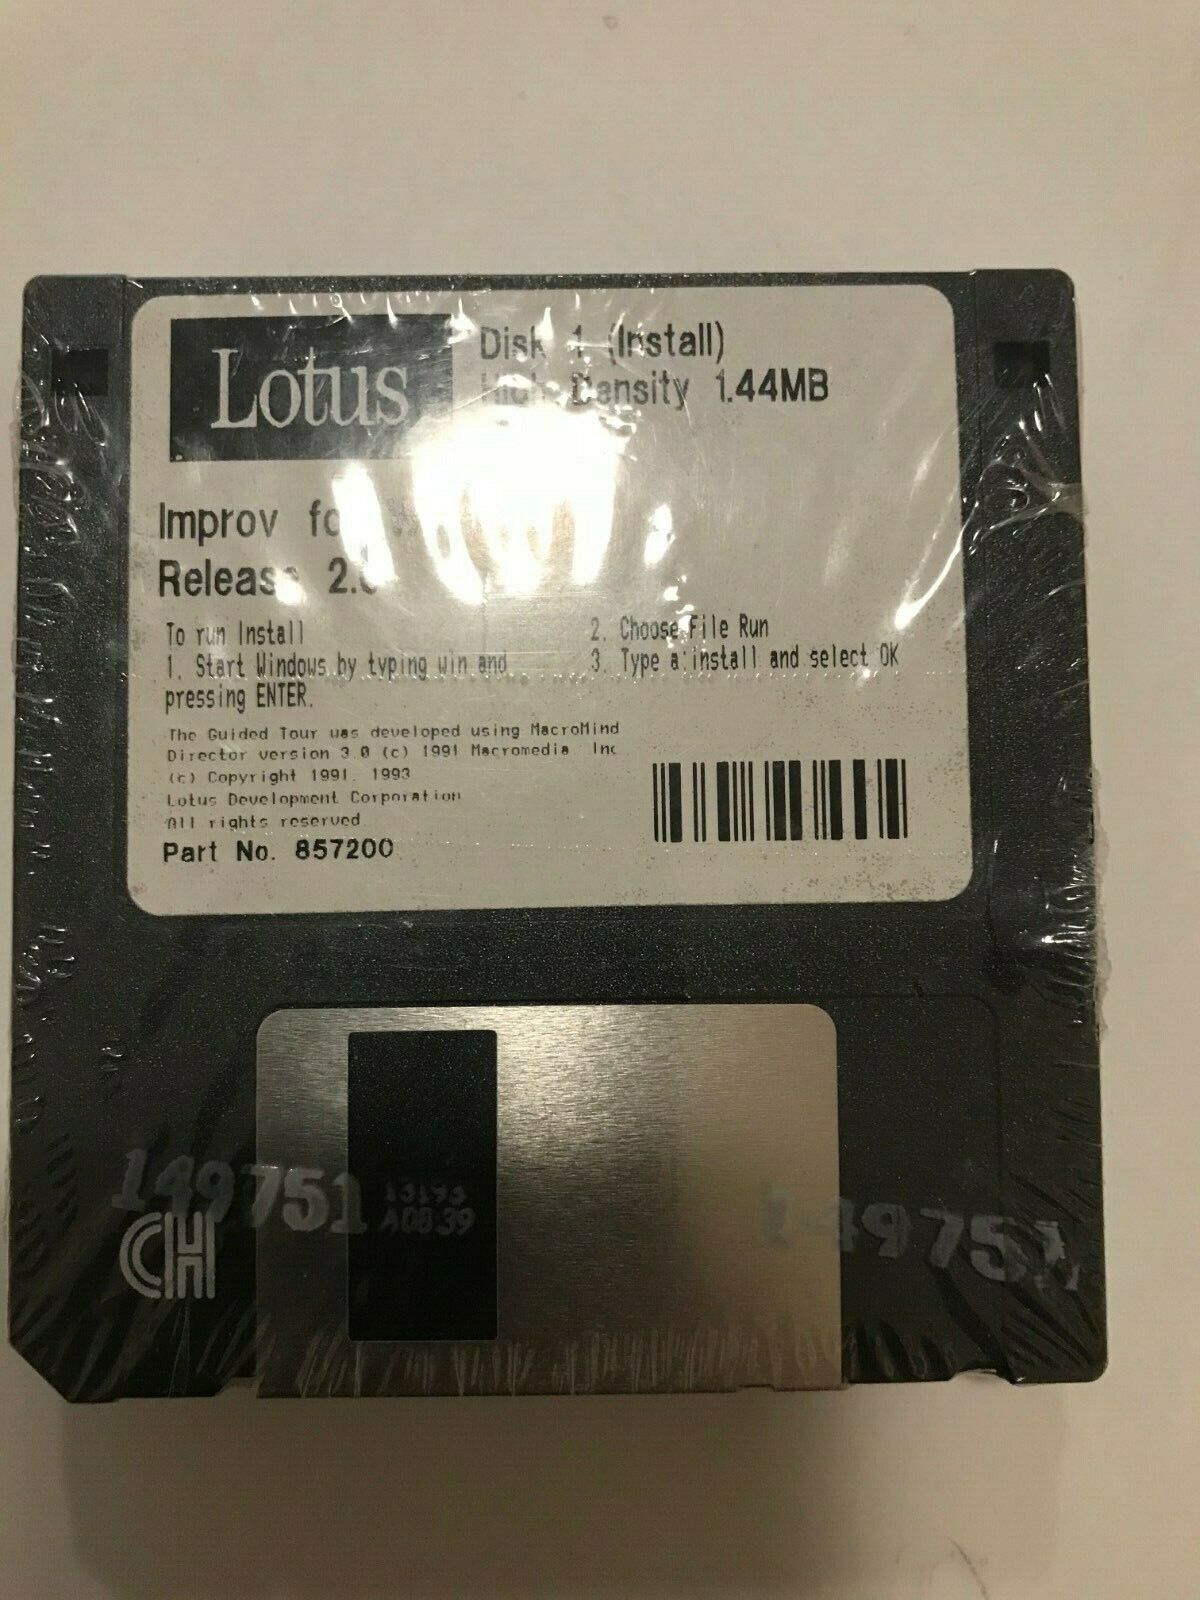 Vintage Lotus Improv For Windows Release 2.0 Floppy Disk - 5 disc